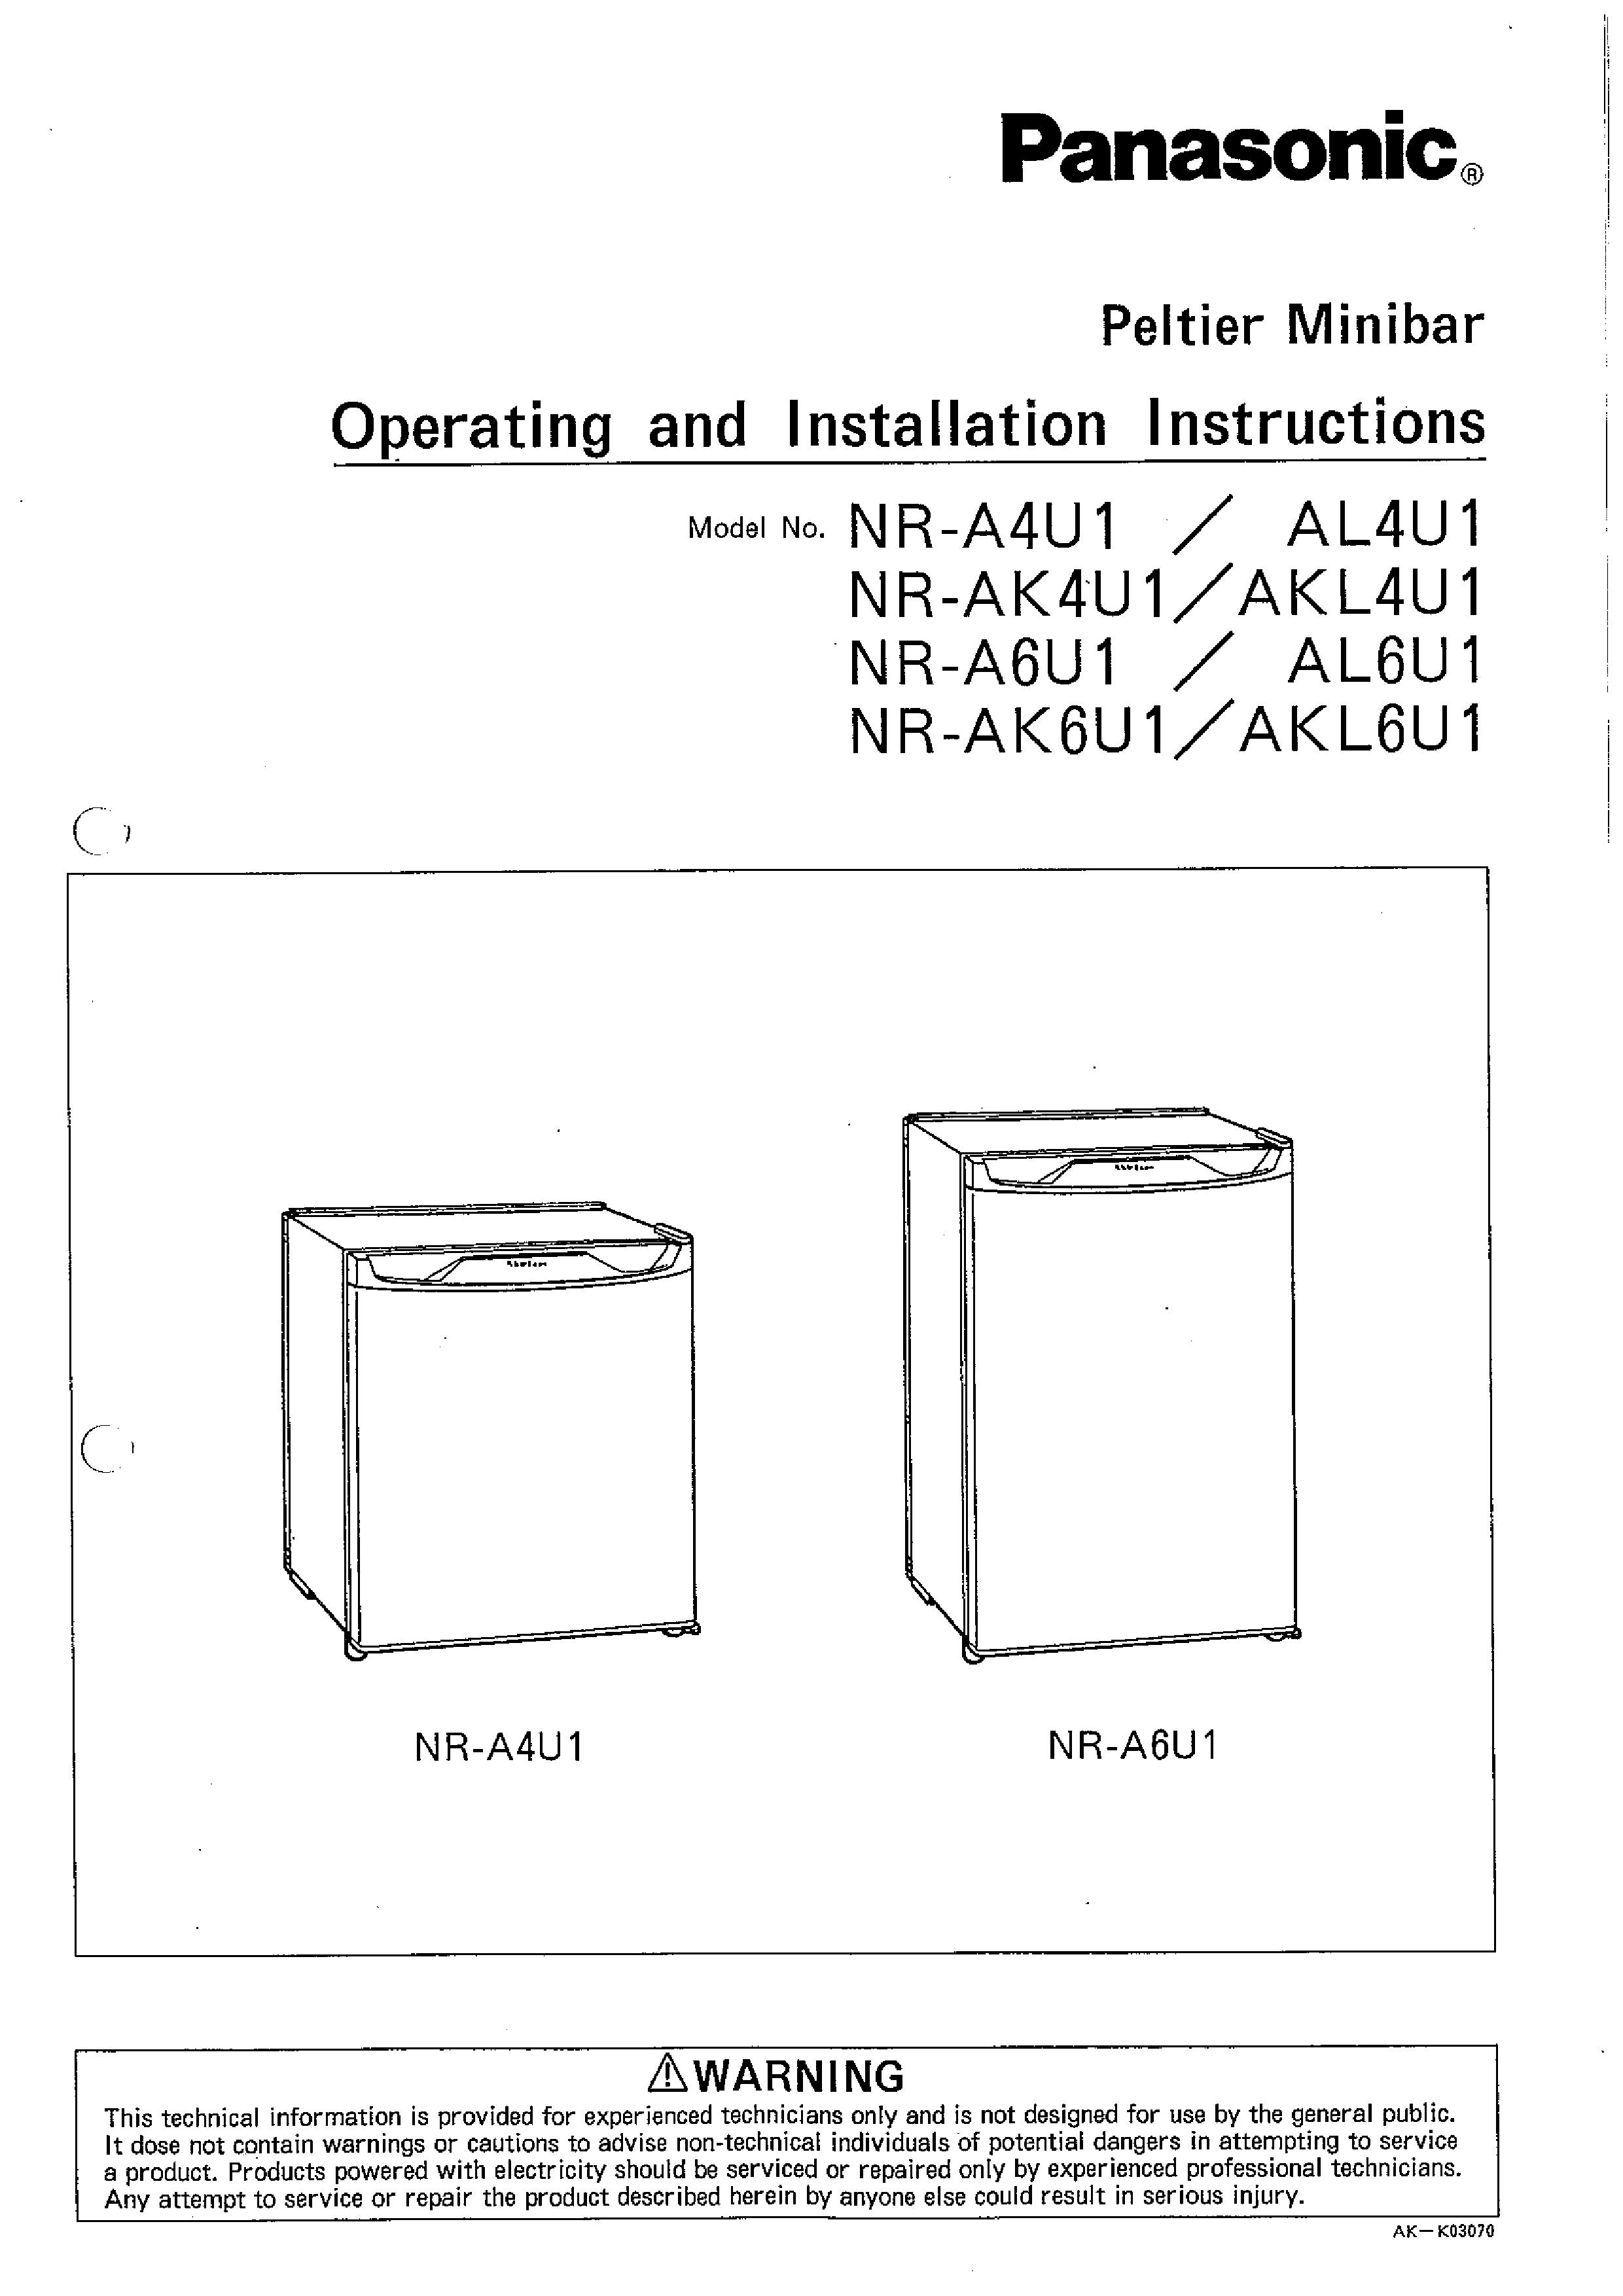 Panasonic NR-AK4U1 Refrigerator User Manual